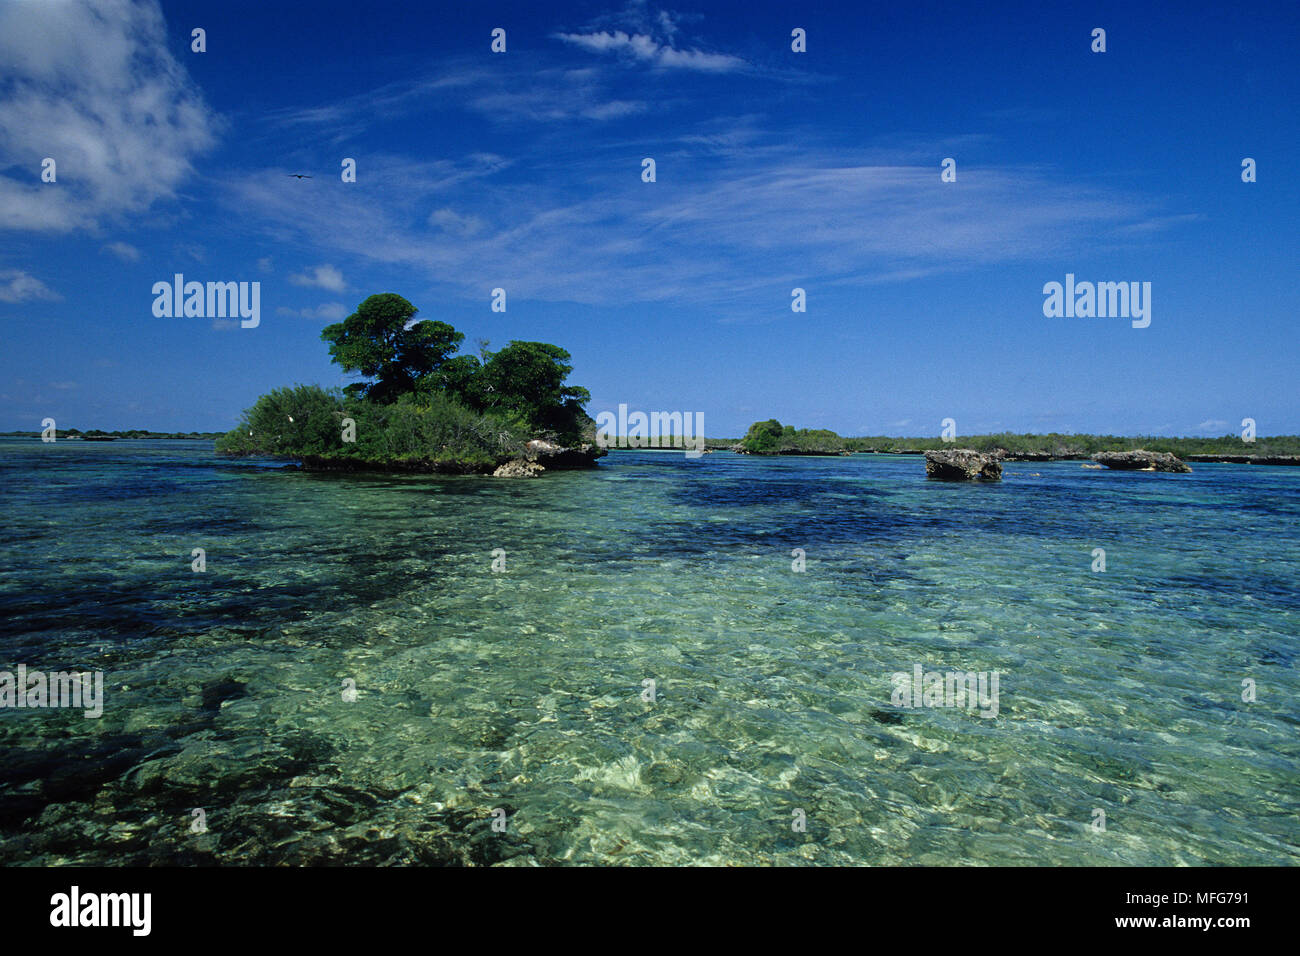 Piccola isola all'interno della laguna, Aldabra Atoll, patrimonio mondiale naturale, Seychelles, Oceano Indiano Data: 24.06.08 RIF: ZB777 115630 0004 COMPULSO Foto Stock